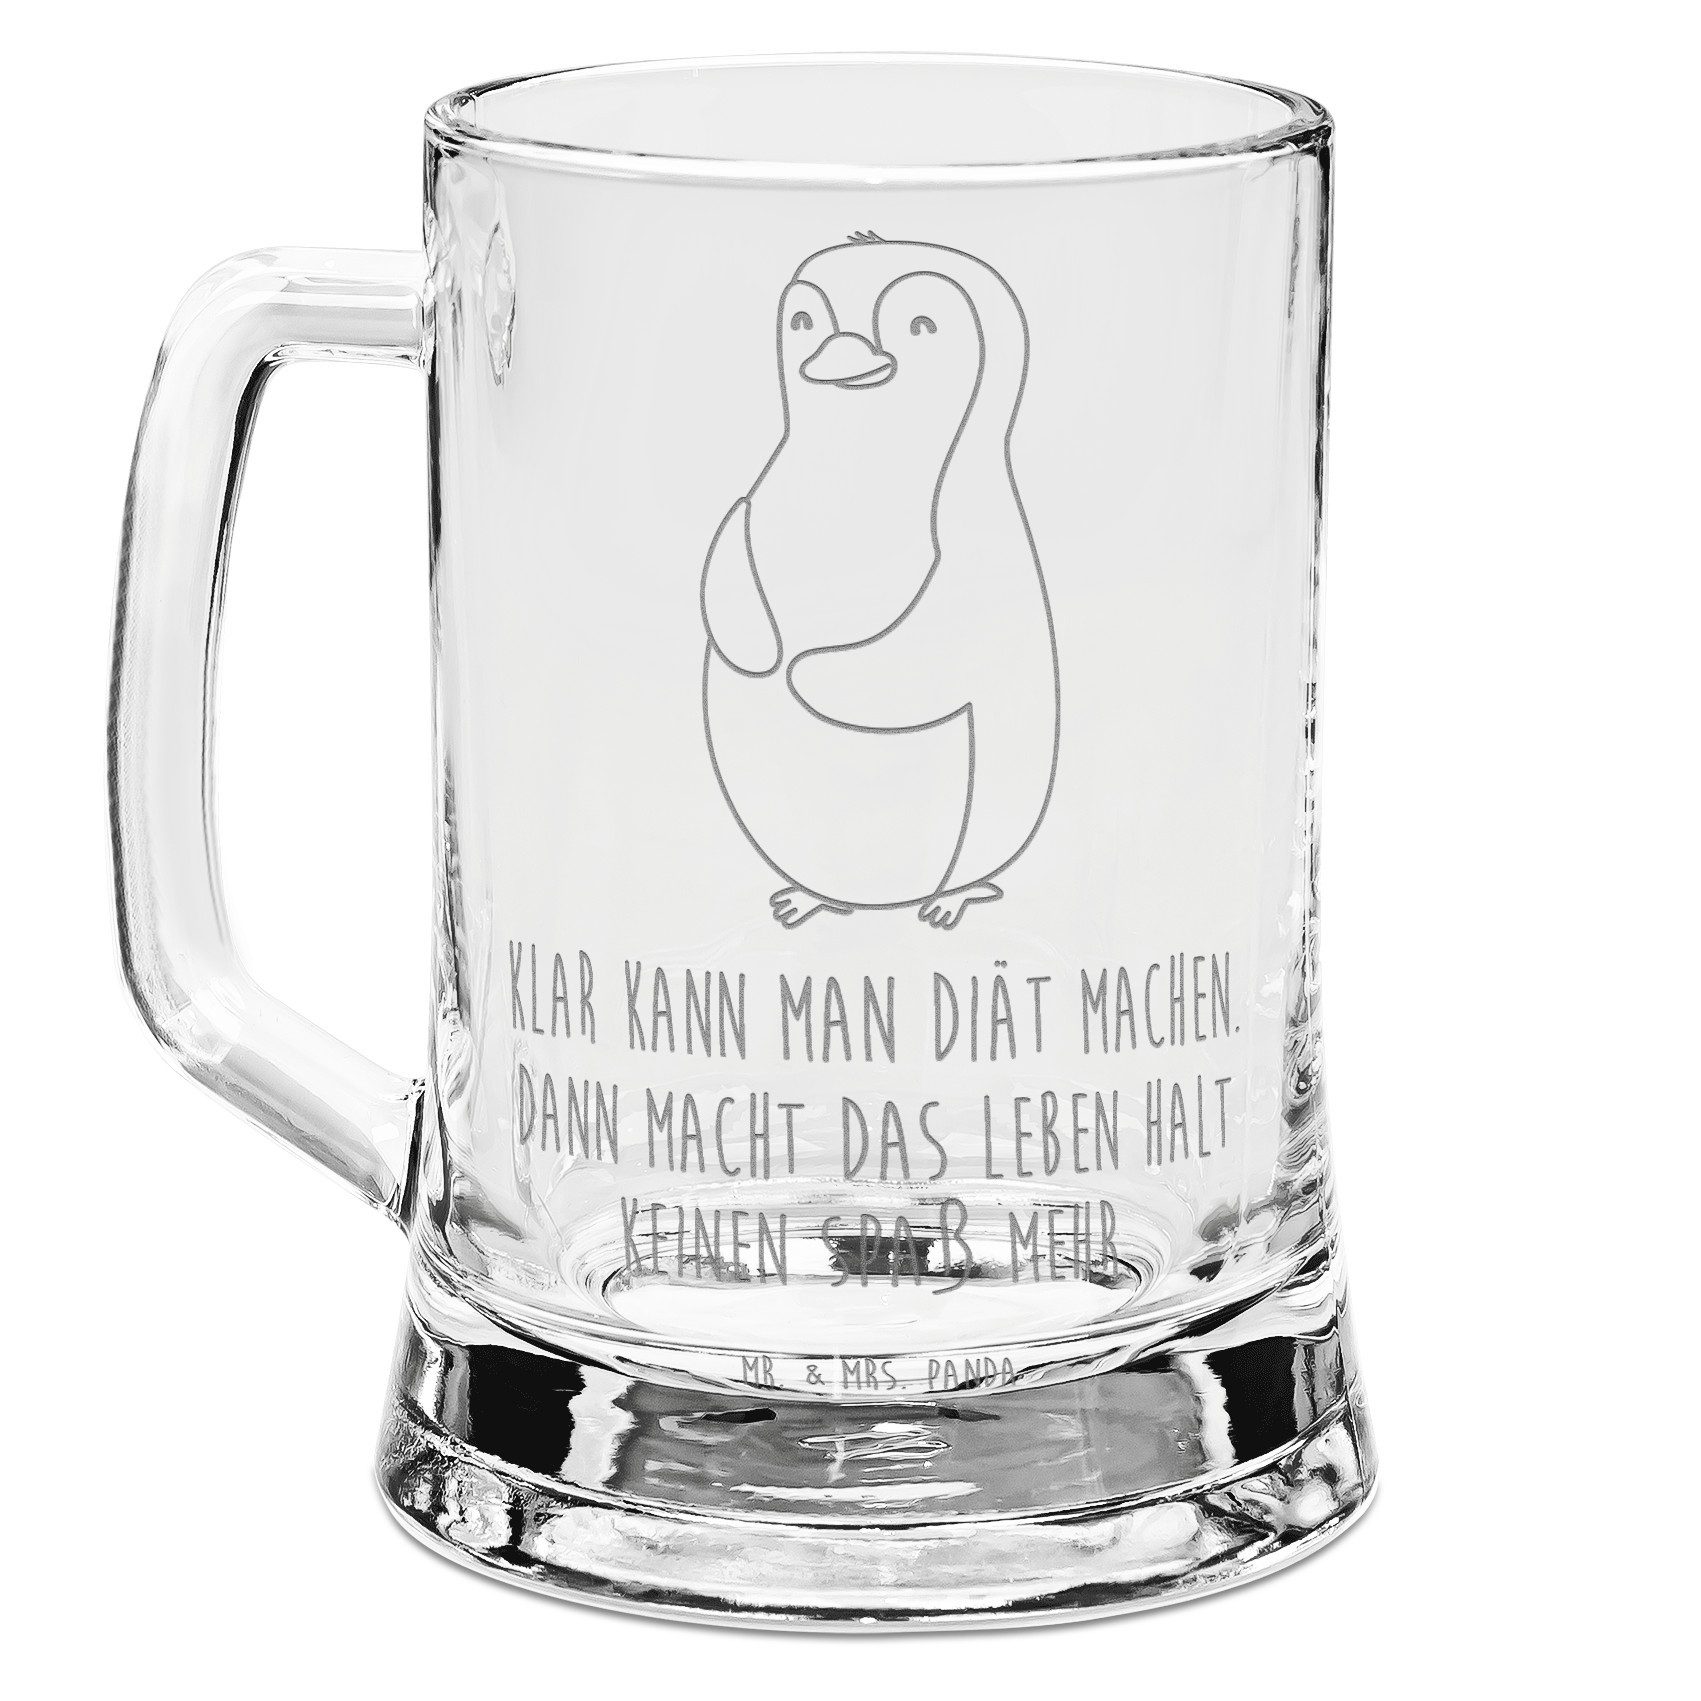 Mr. & Mrs. Panda Bierkrug Pinguin Diät - Transparent - Geschenk, Bierkrug Glas, Vatertag, Bierk, Premium Glas, Elegantes Design